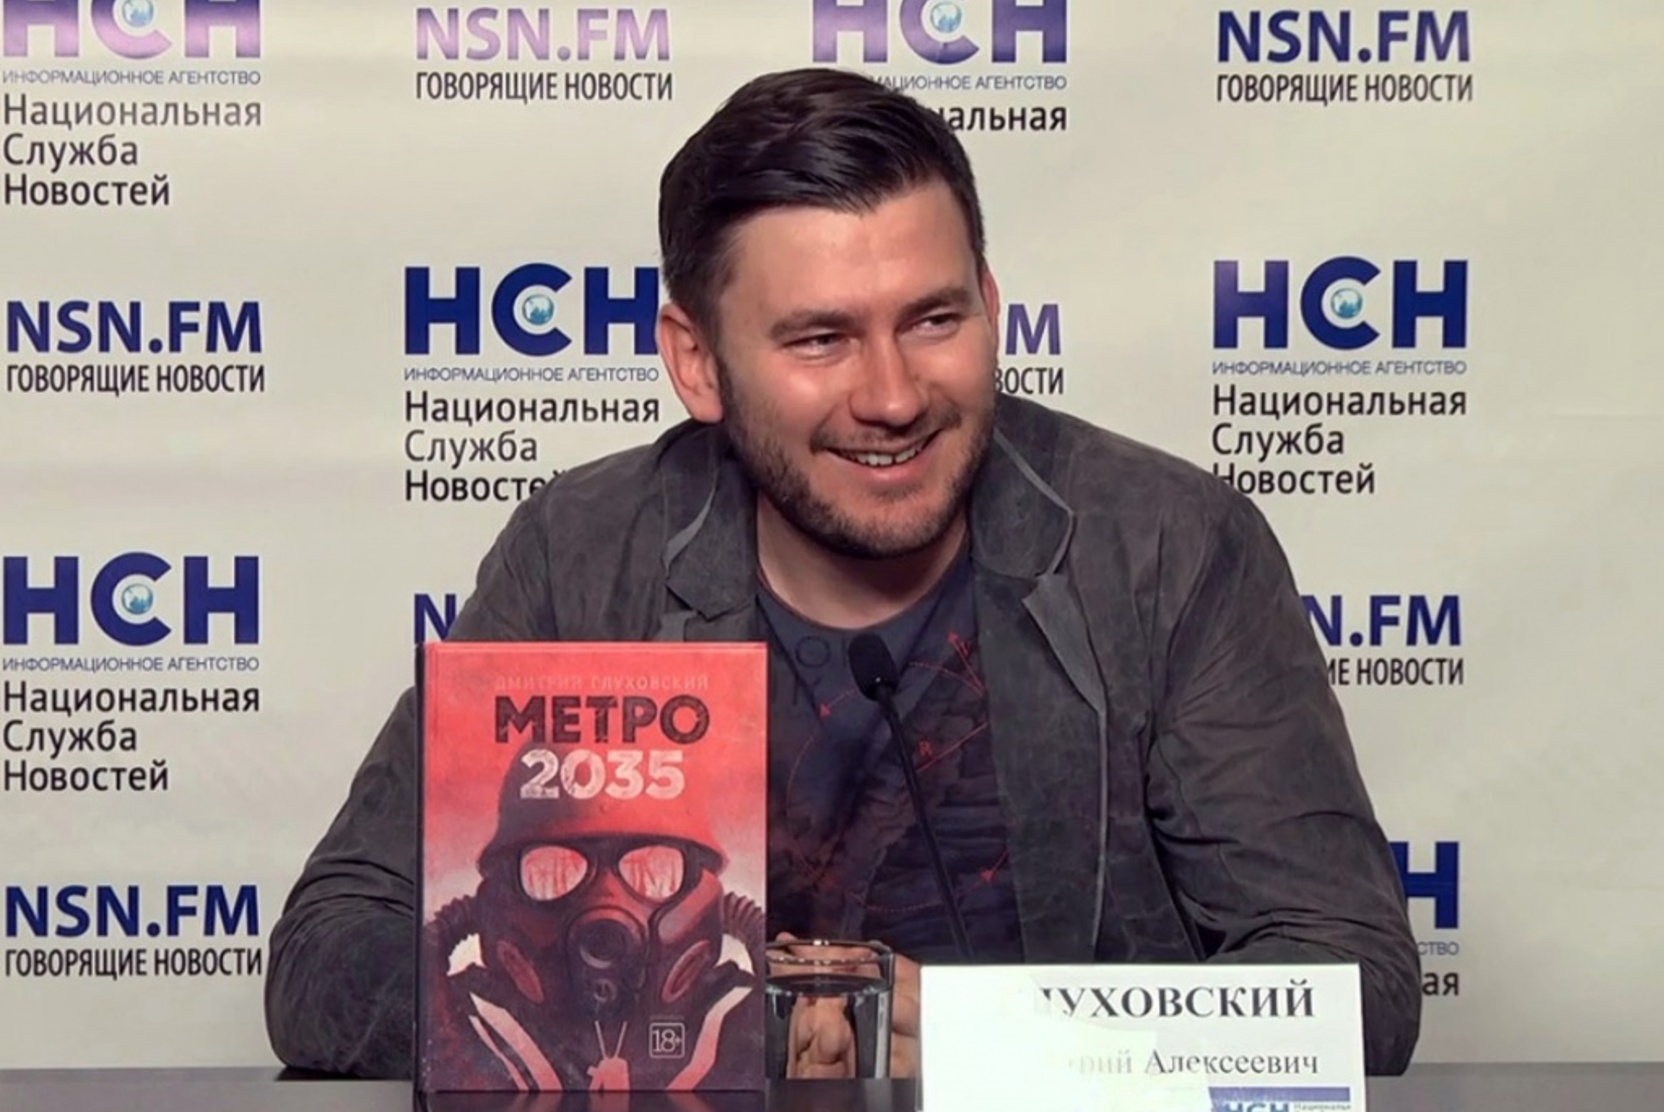 СМИ: Чеченский Telegram-канал посоветовал оглядываться сценаристу Глуховскому